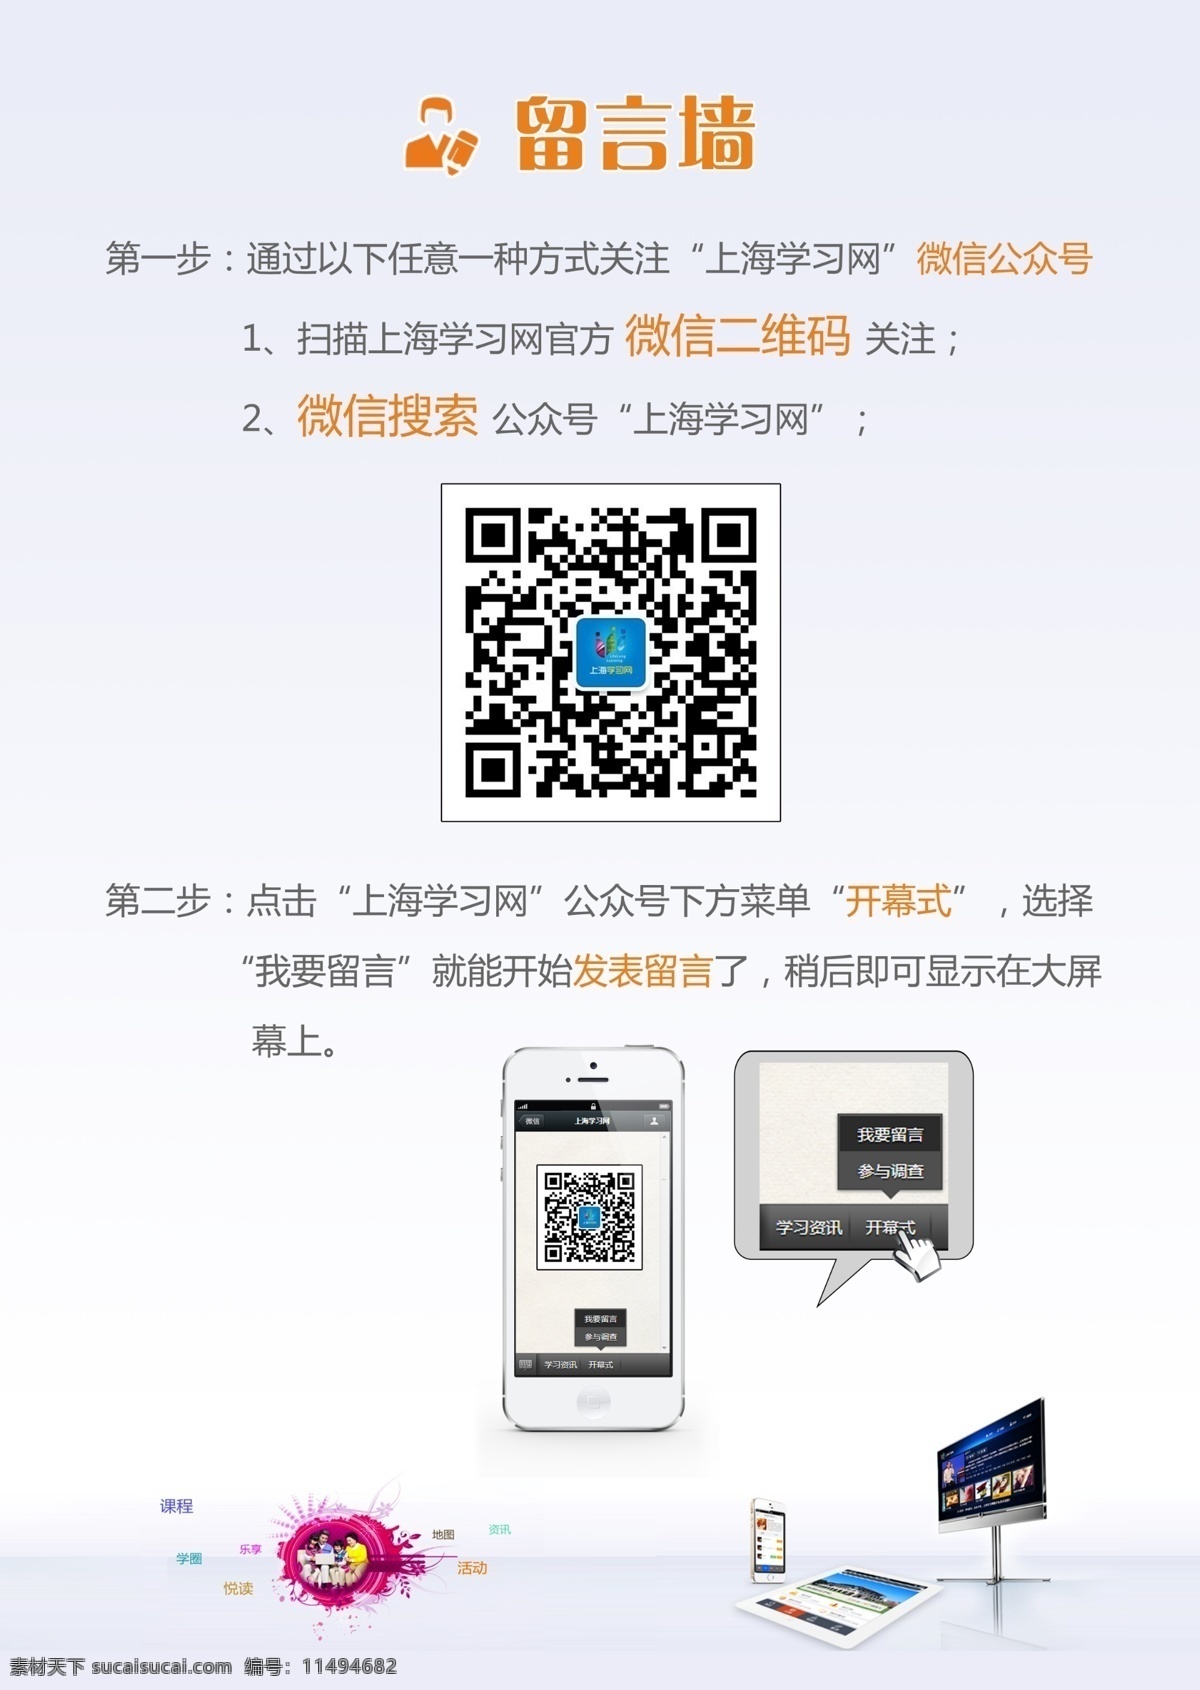 引导牌 扫 微 信 二维码 微信 教育 上海 电视 点击 留言墙 图标